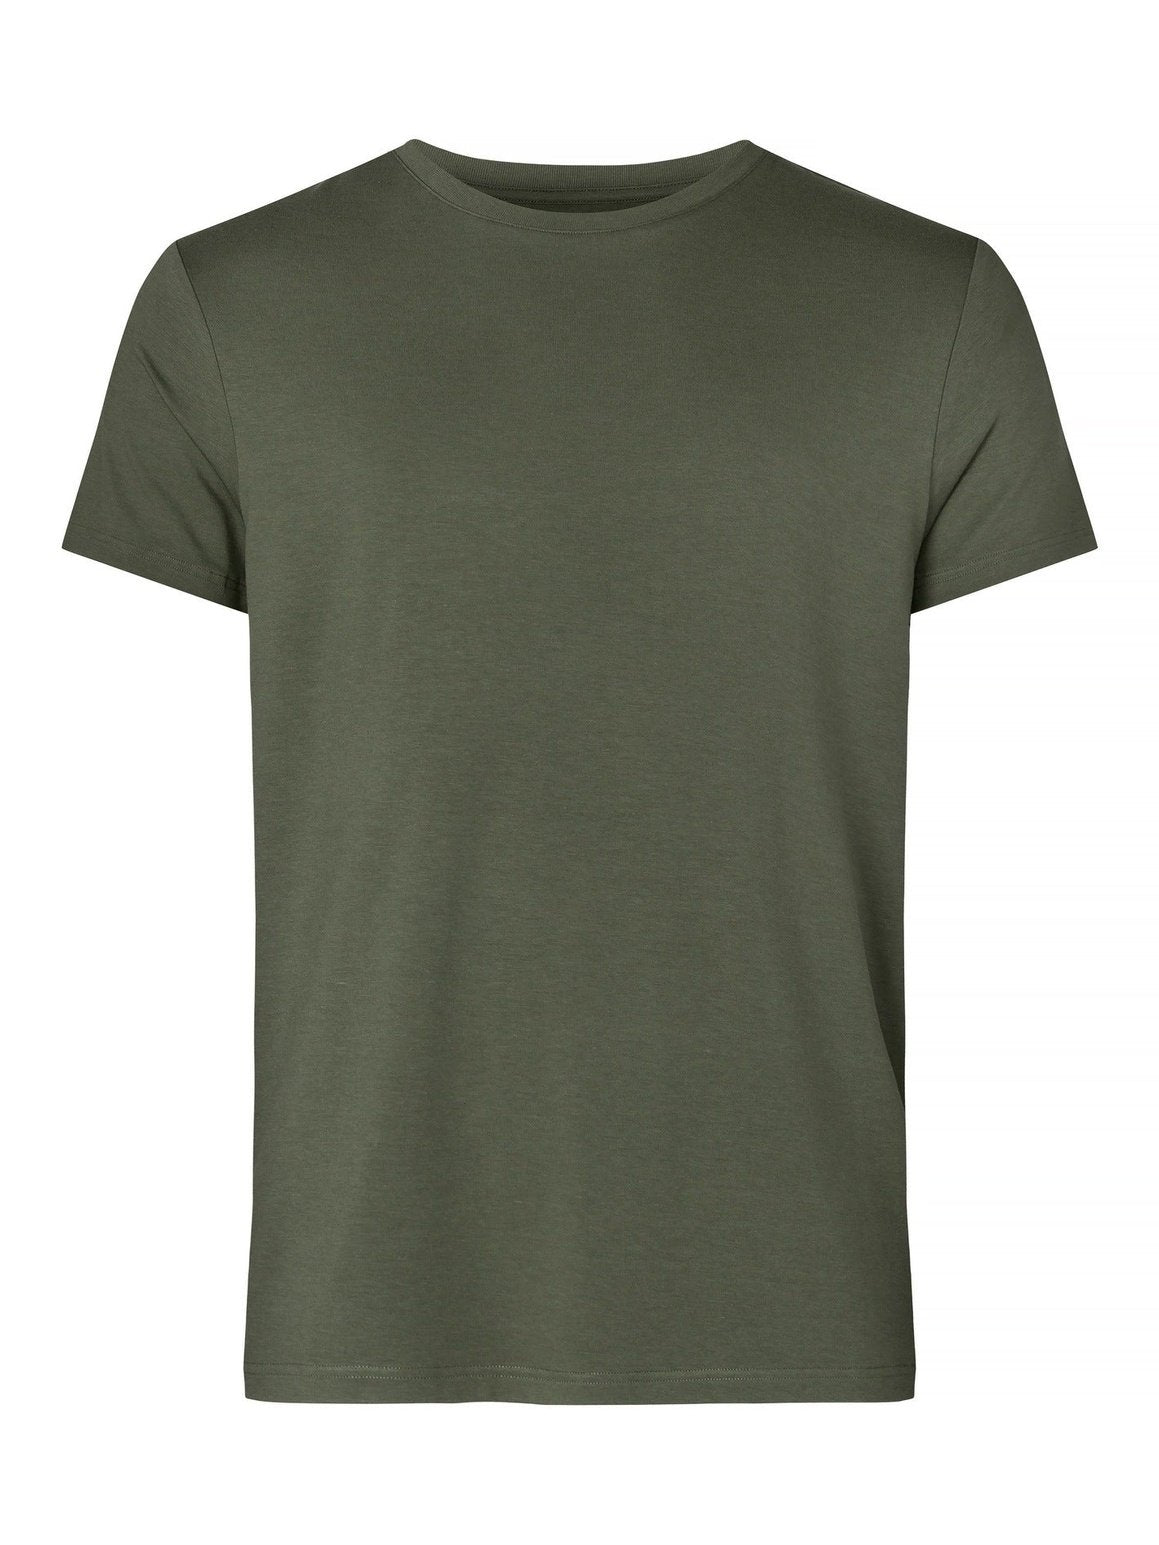  T-skjorteResteröds Bambus T-skjorte - Grønn